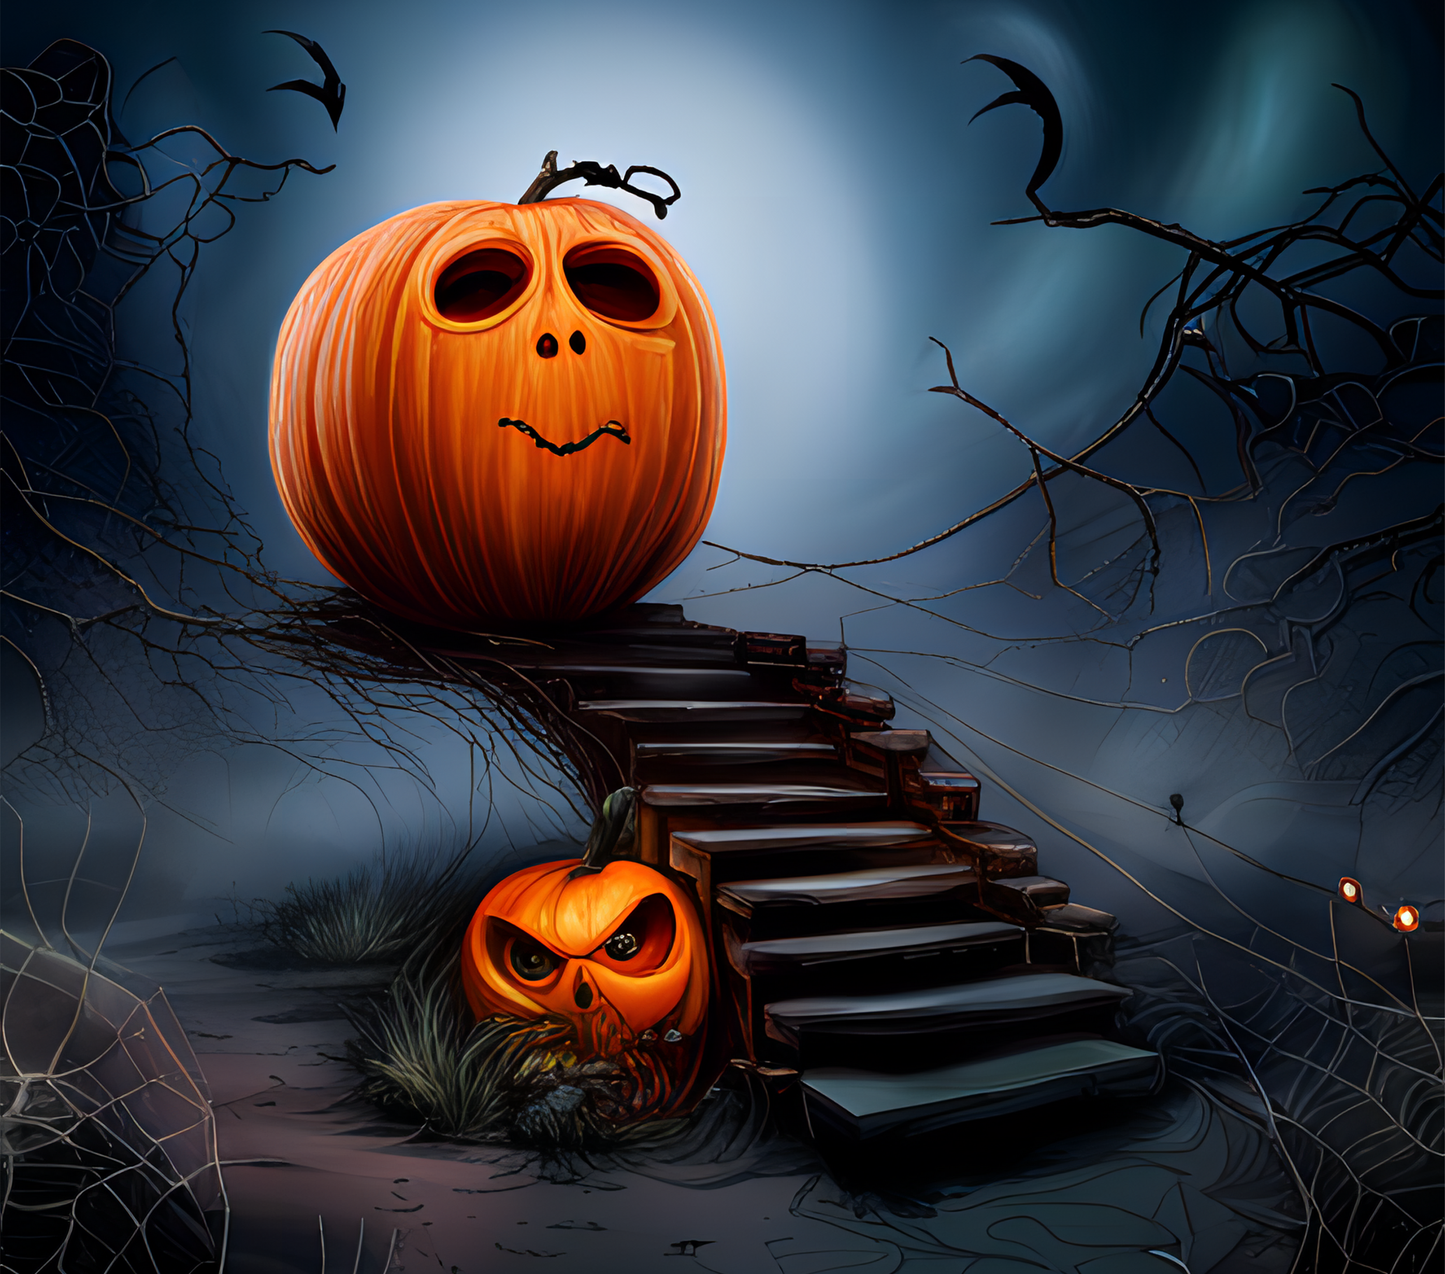 TW1659 pumpkin stairs